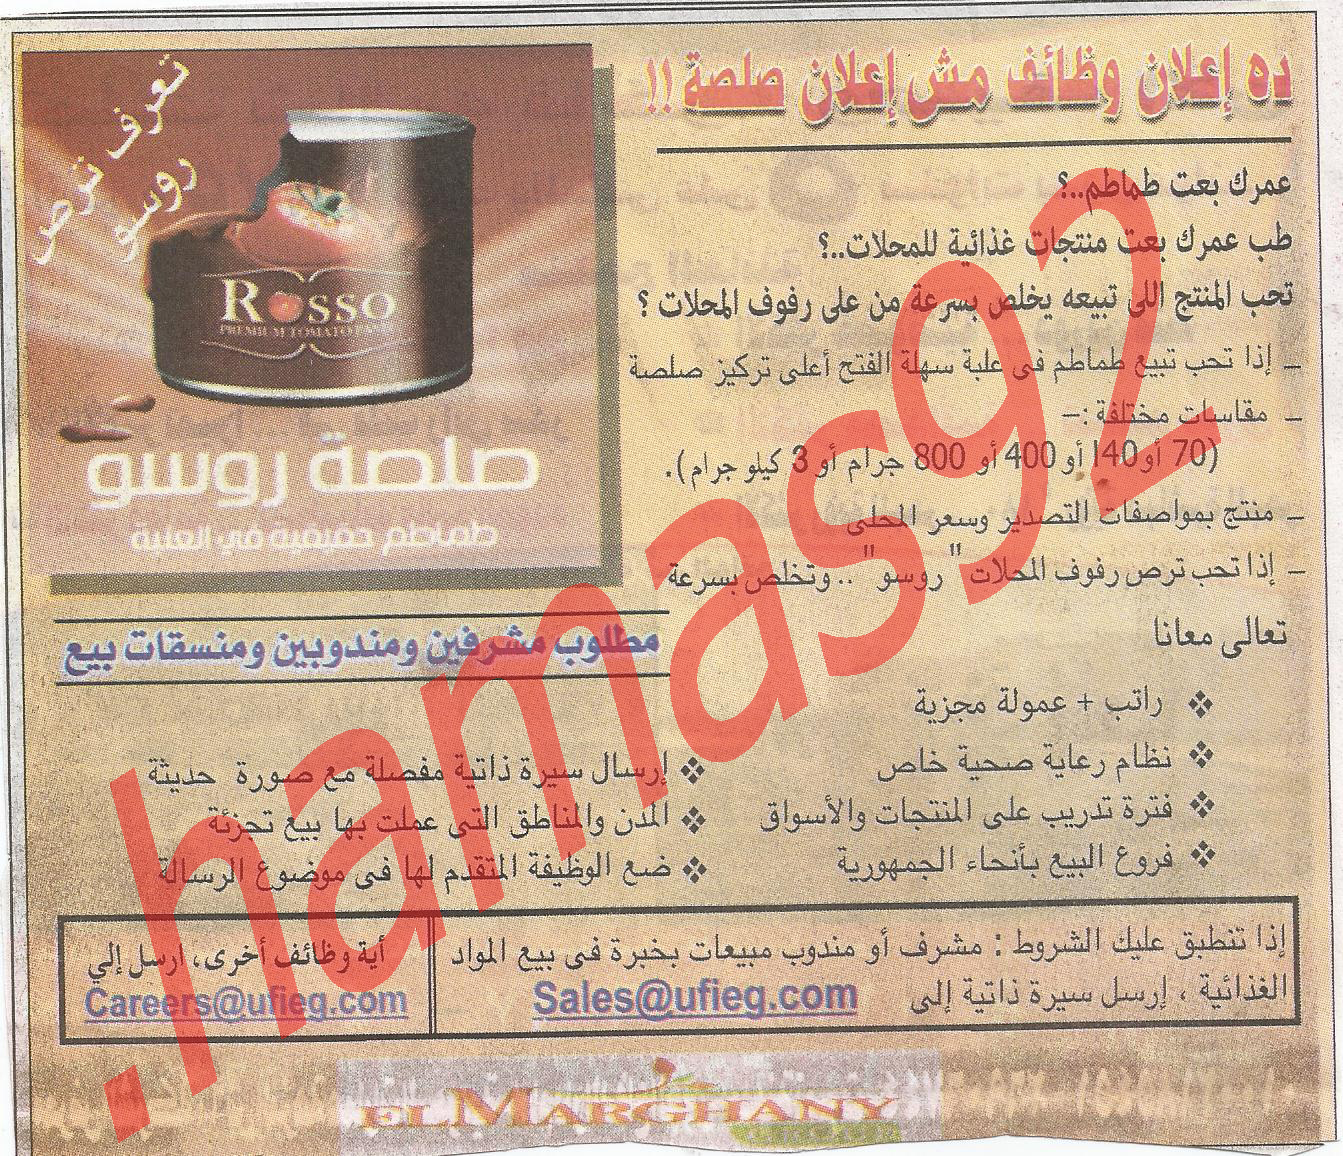  جريدة المصرى اليوم الجمعة 13\4\2012 وظائف منتج صلصة روسو  %D8%B5%D9%84%D8%B5%D8%A9+%D8%B1%D9%88%D8%B3%D9%88